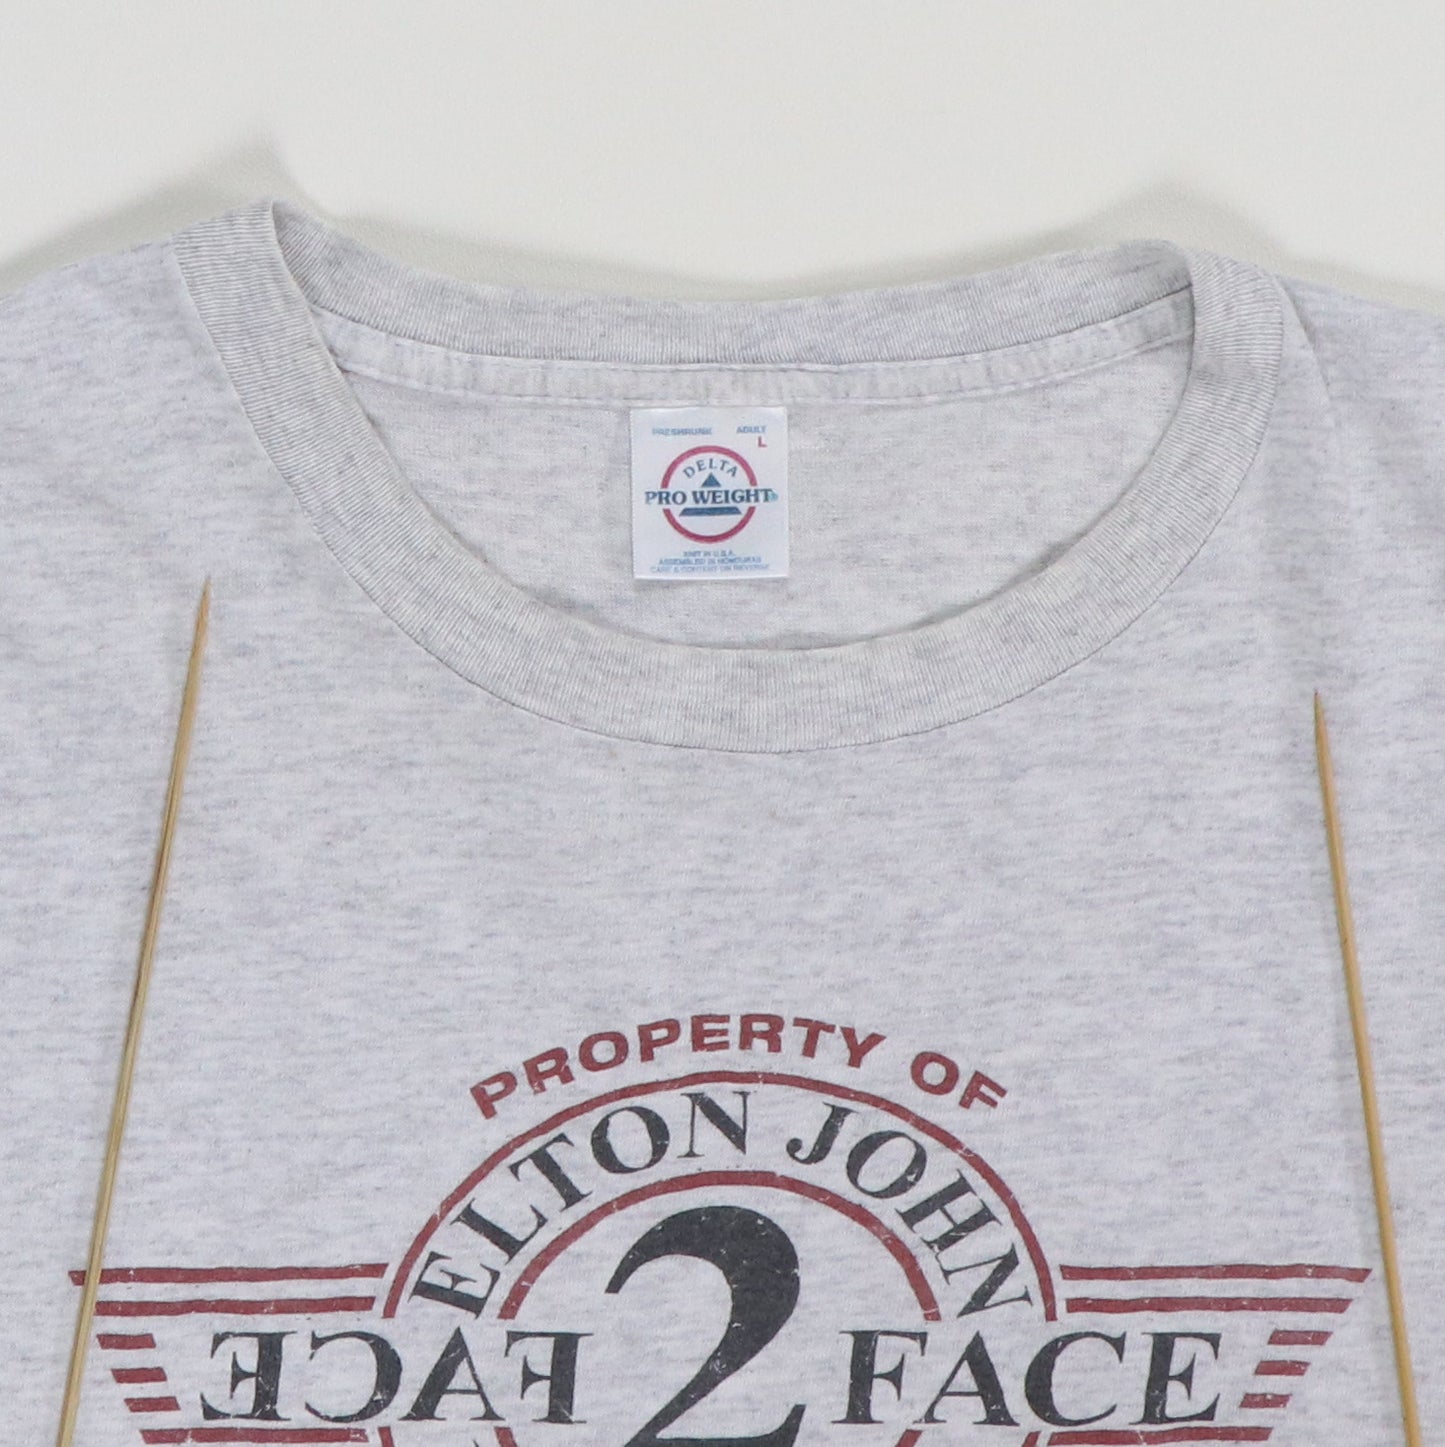 2003 Elton John Billy Joel Face To Face Tour Shirt